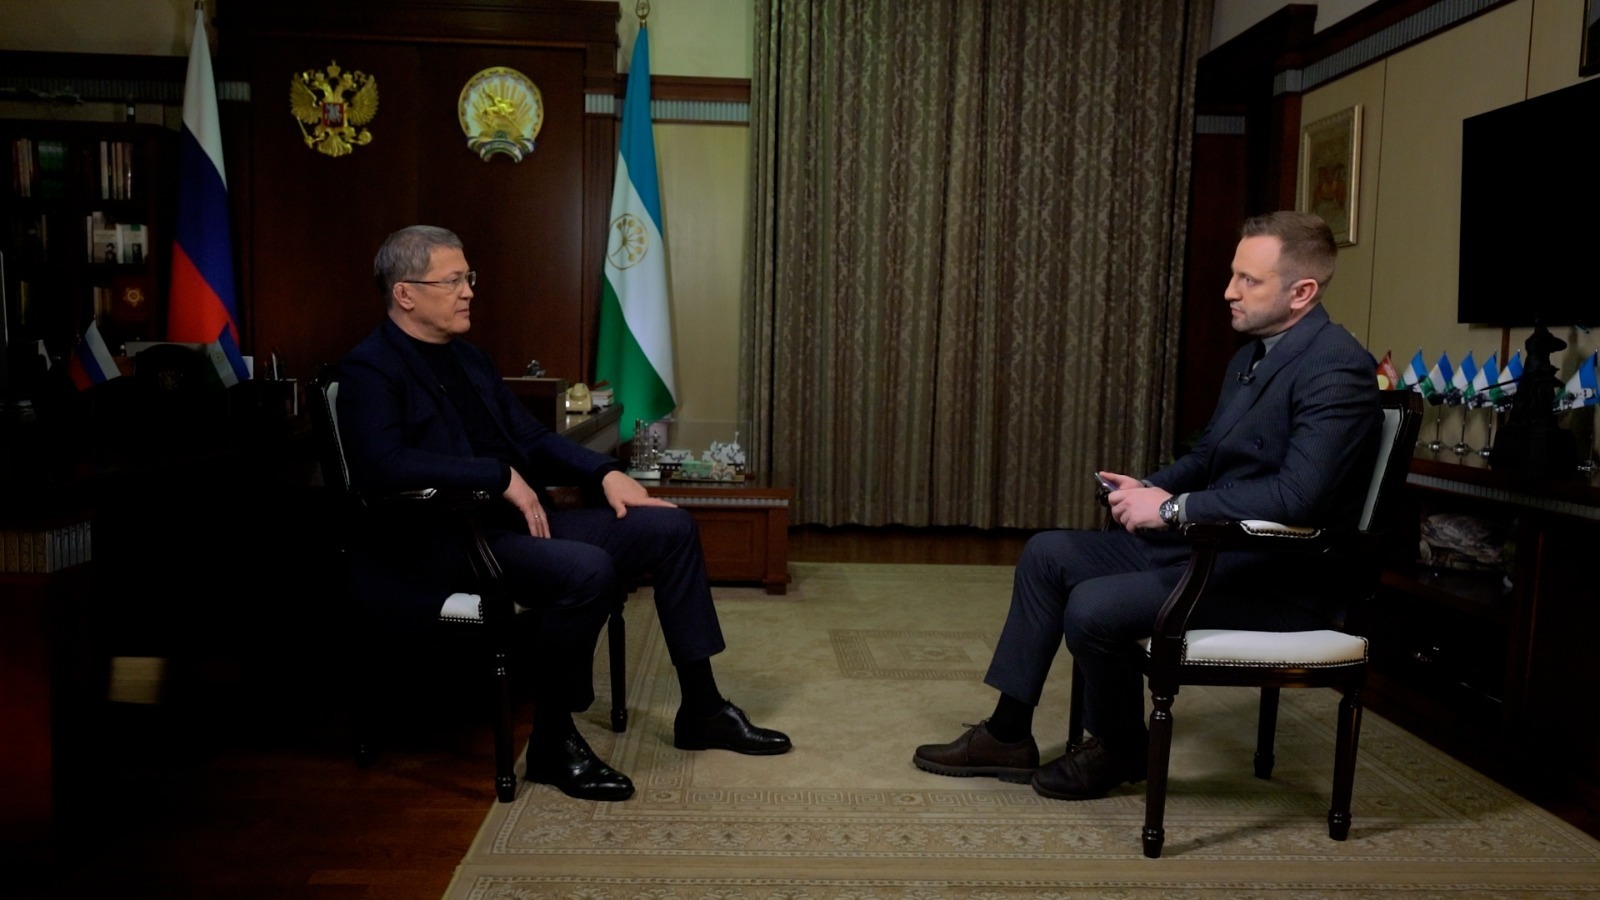 Глава Башкирии Радий Хабиров в канун своего юбилея дал эксклюзивное интервью телеканалу БСТ